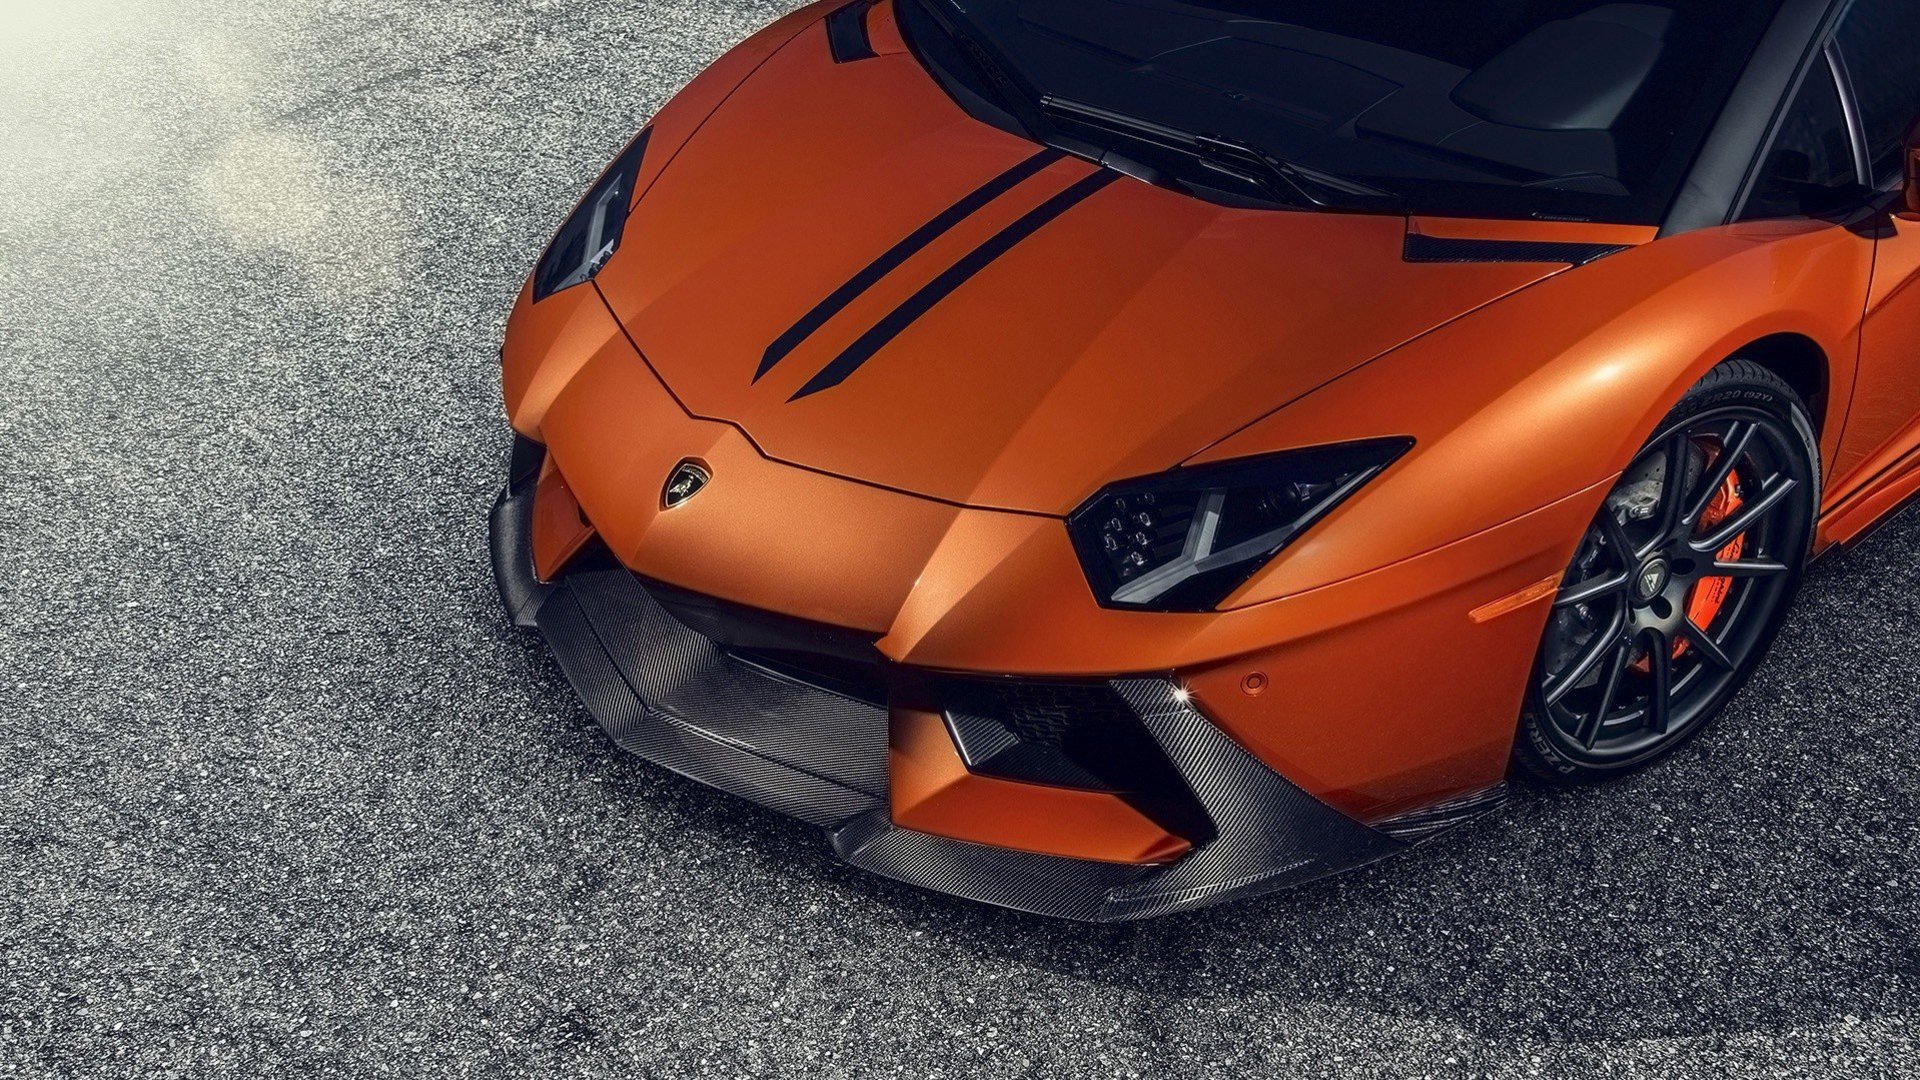 Hình nền siêu xe Lamborghini full HD đẹp nhất - [Kích thước hình ảnh: 1920x1080 px]